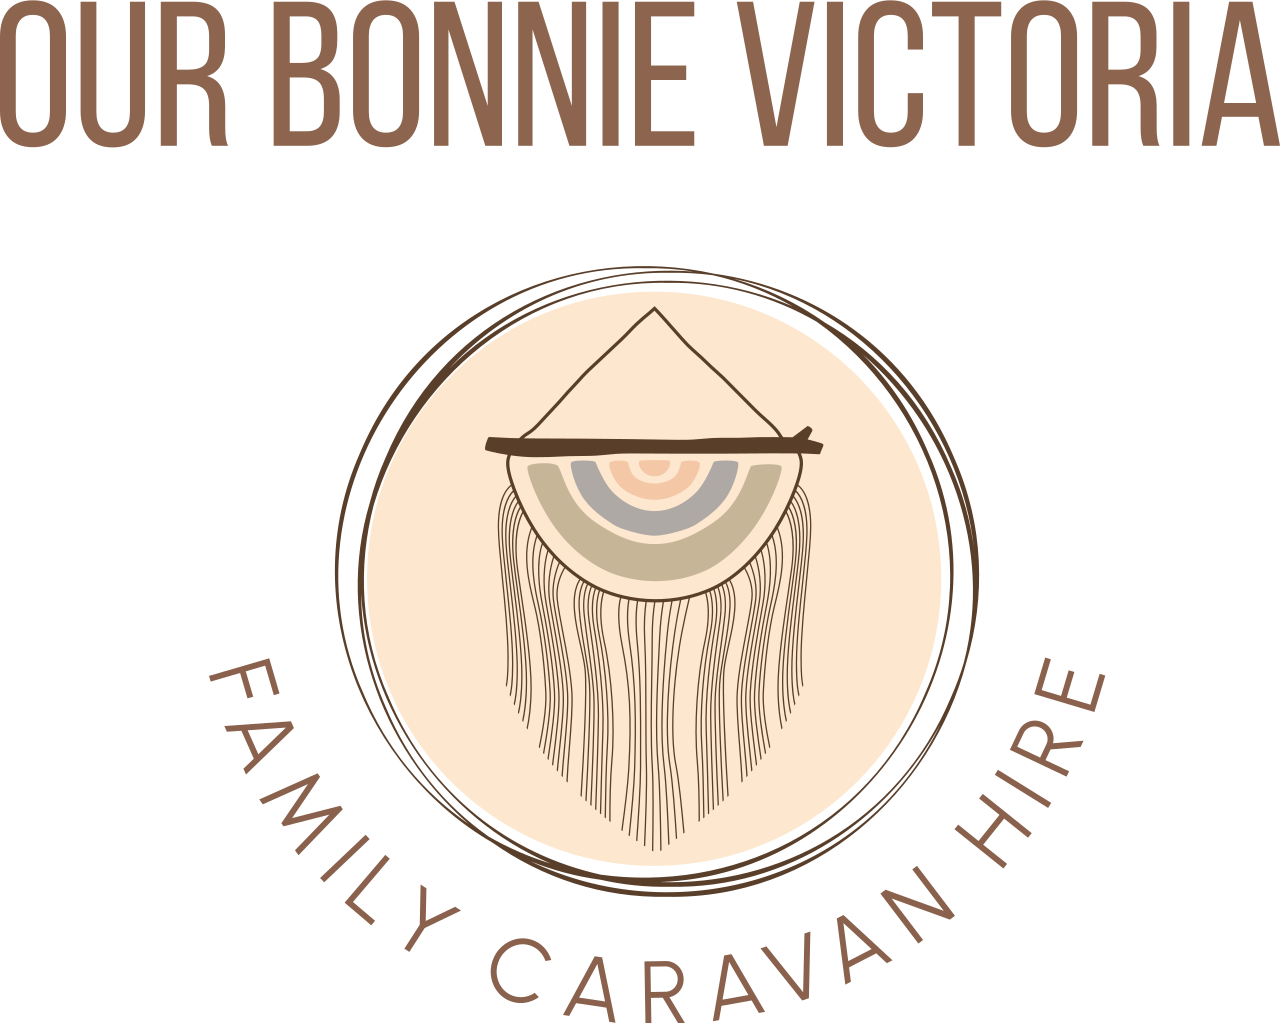 Our Bonnie Victoria - Haggerston Castle's logo